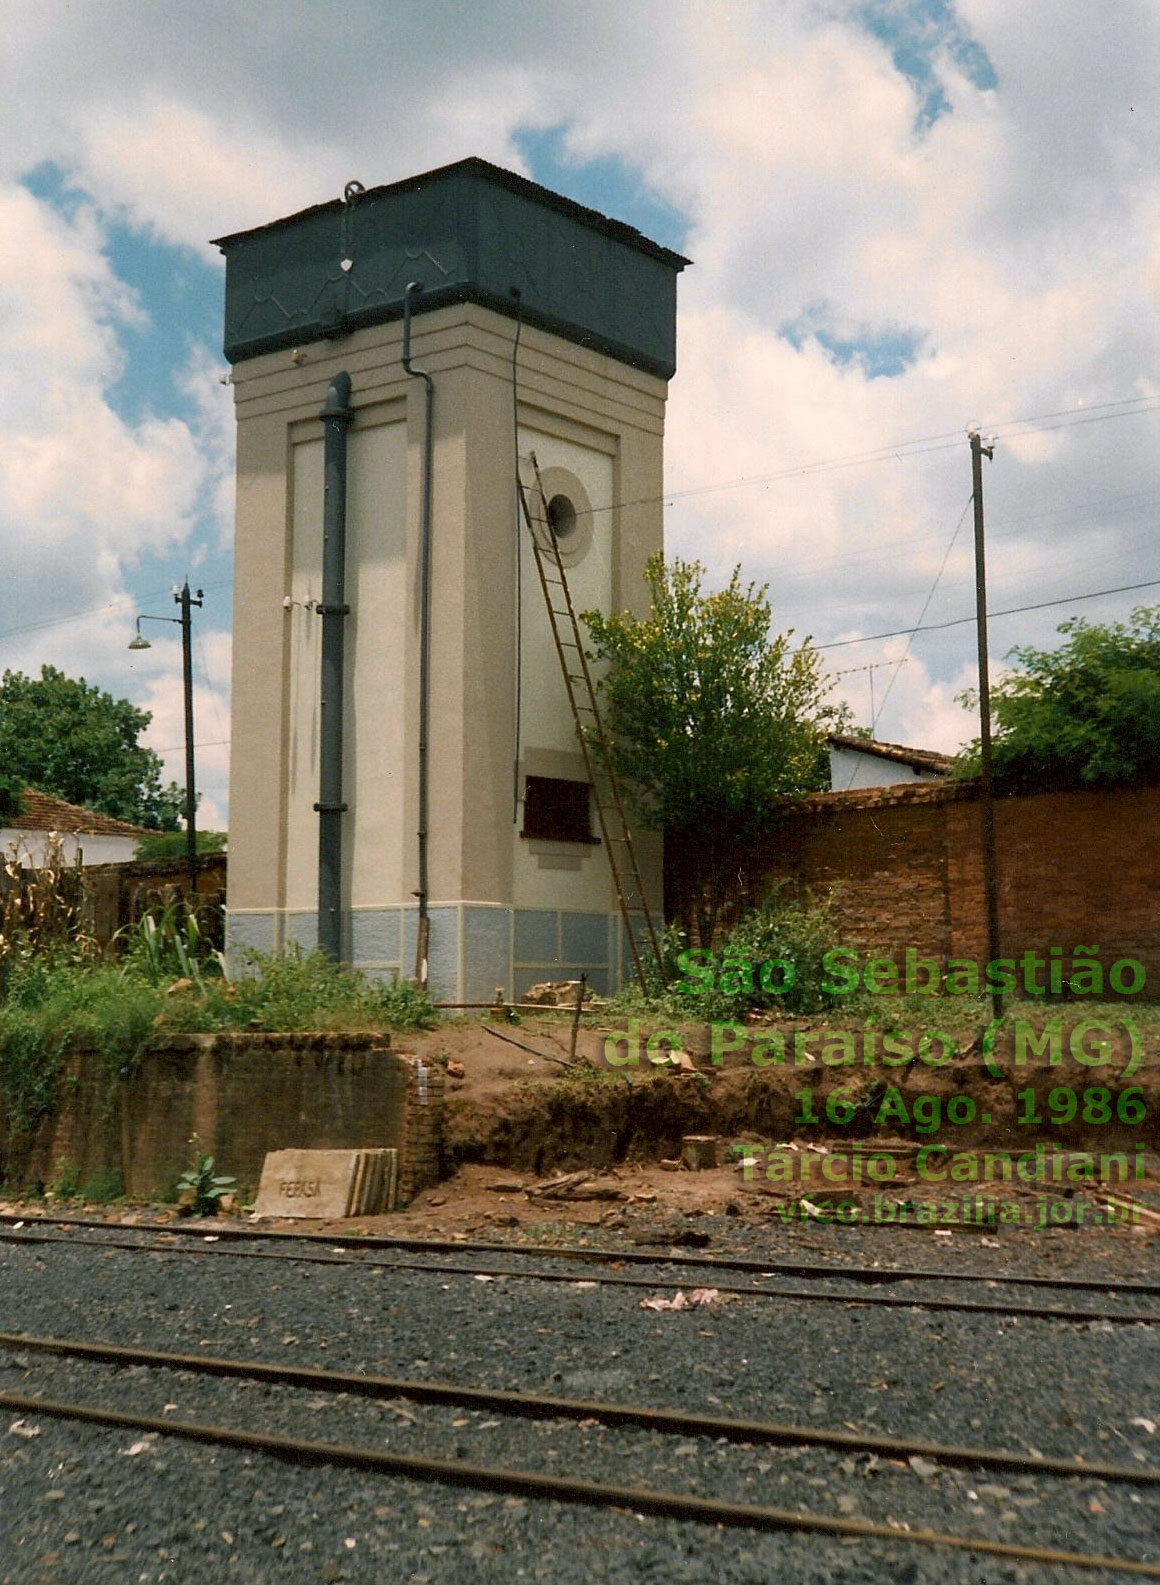 Caixa d'água da estação ferroviária de São Sebastião do Paraíso em 1986